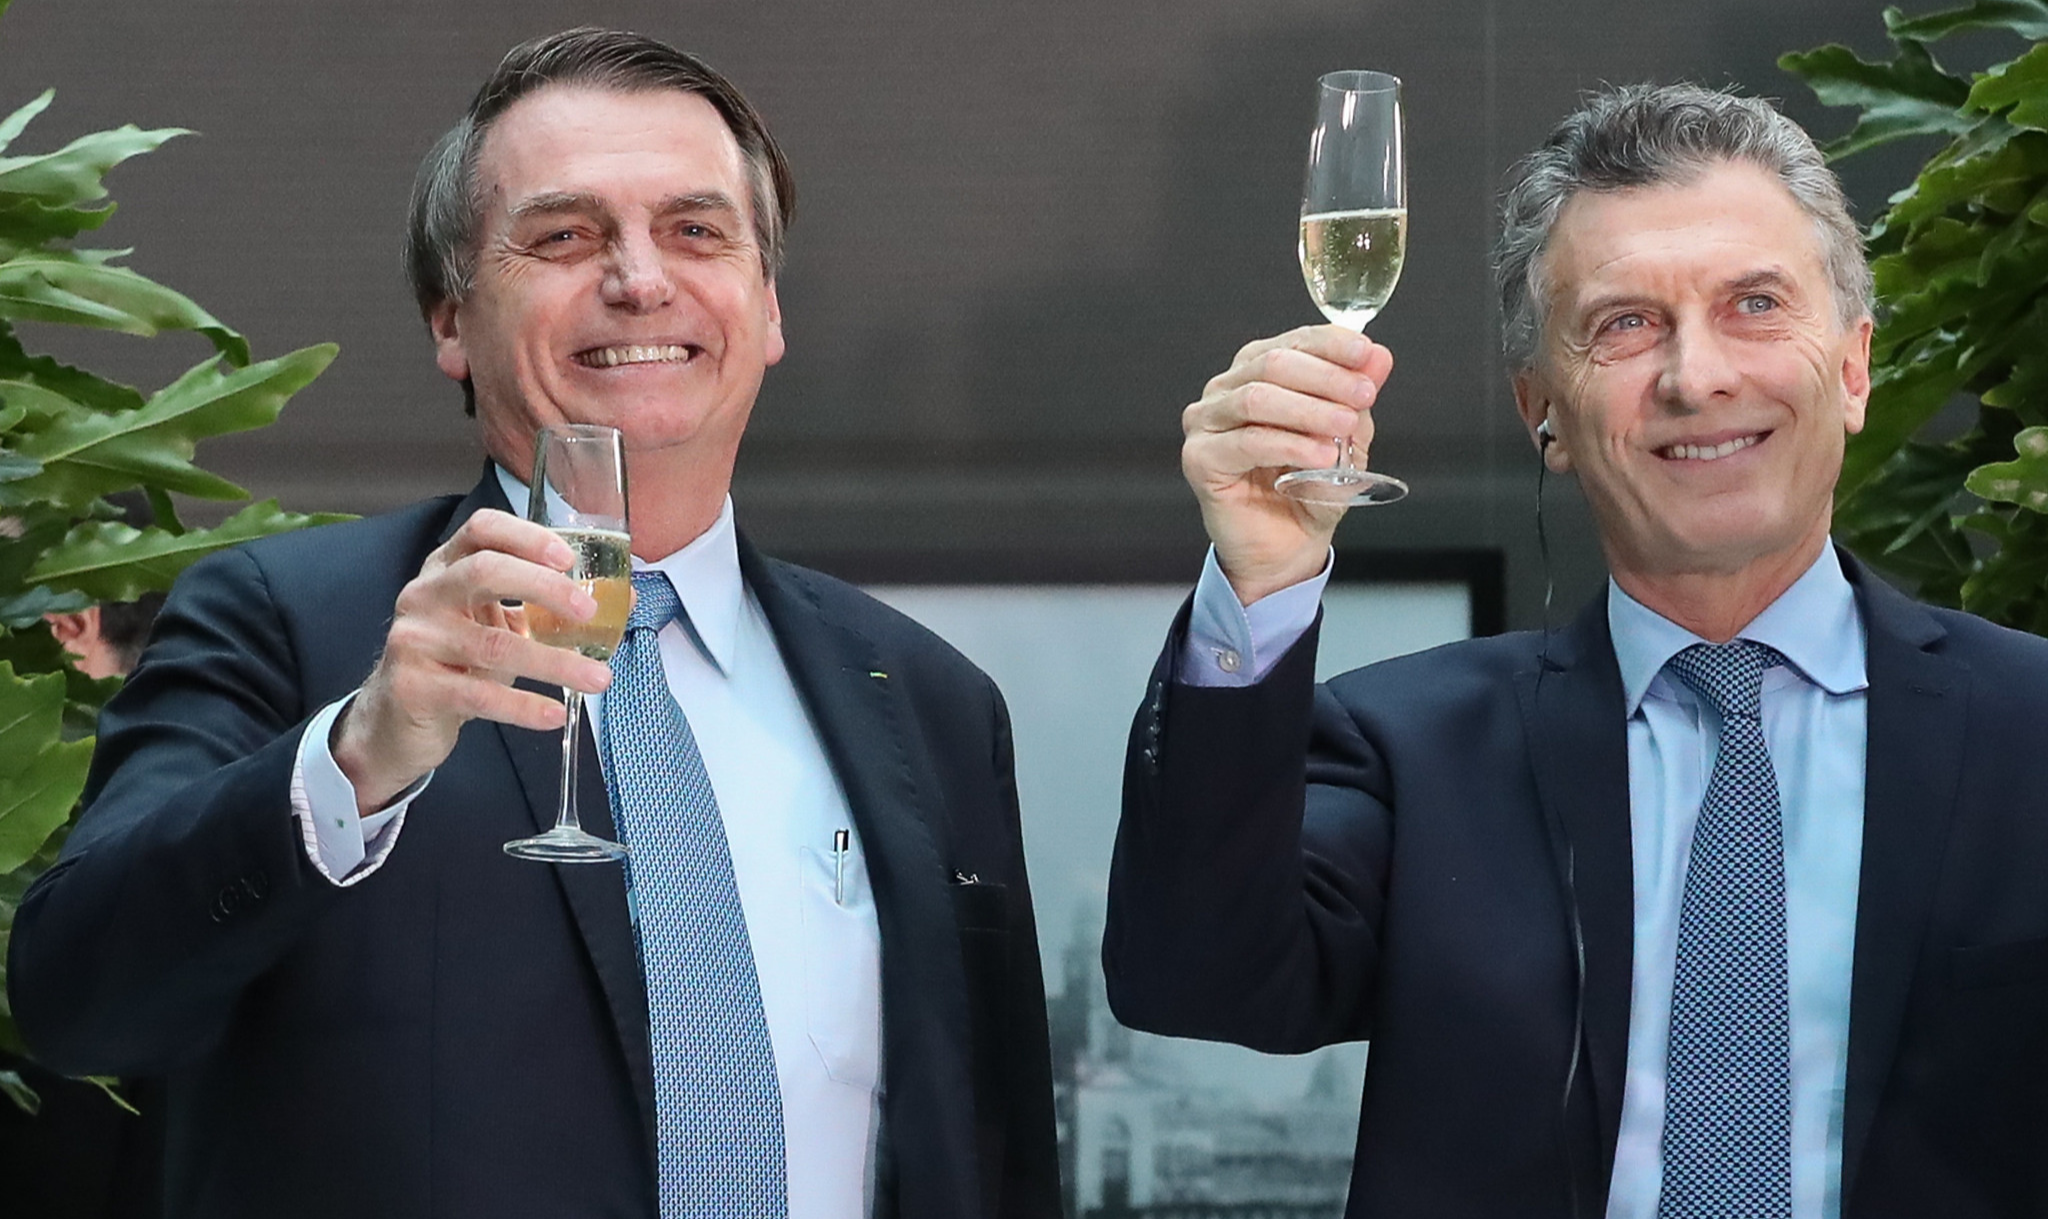 Larga vitória de Alberto Fernández e Cristina Kirchner, em primárias nacionais, torna quase irreversível derrota de Macri, o Bolsonaro portenho; há enormes lições a aprender — especialmente no Brasil